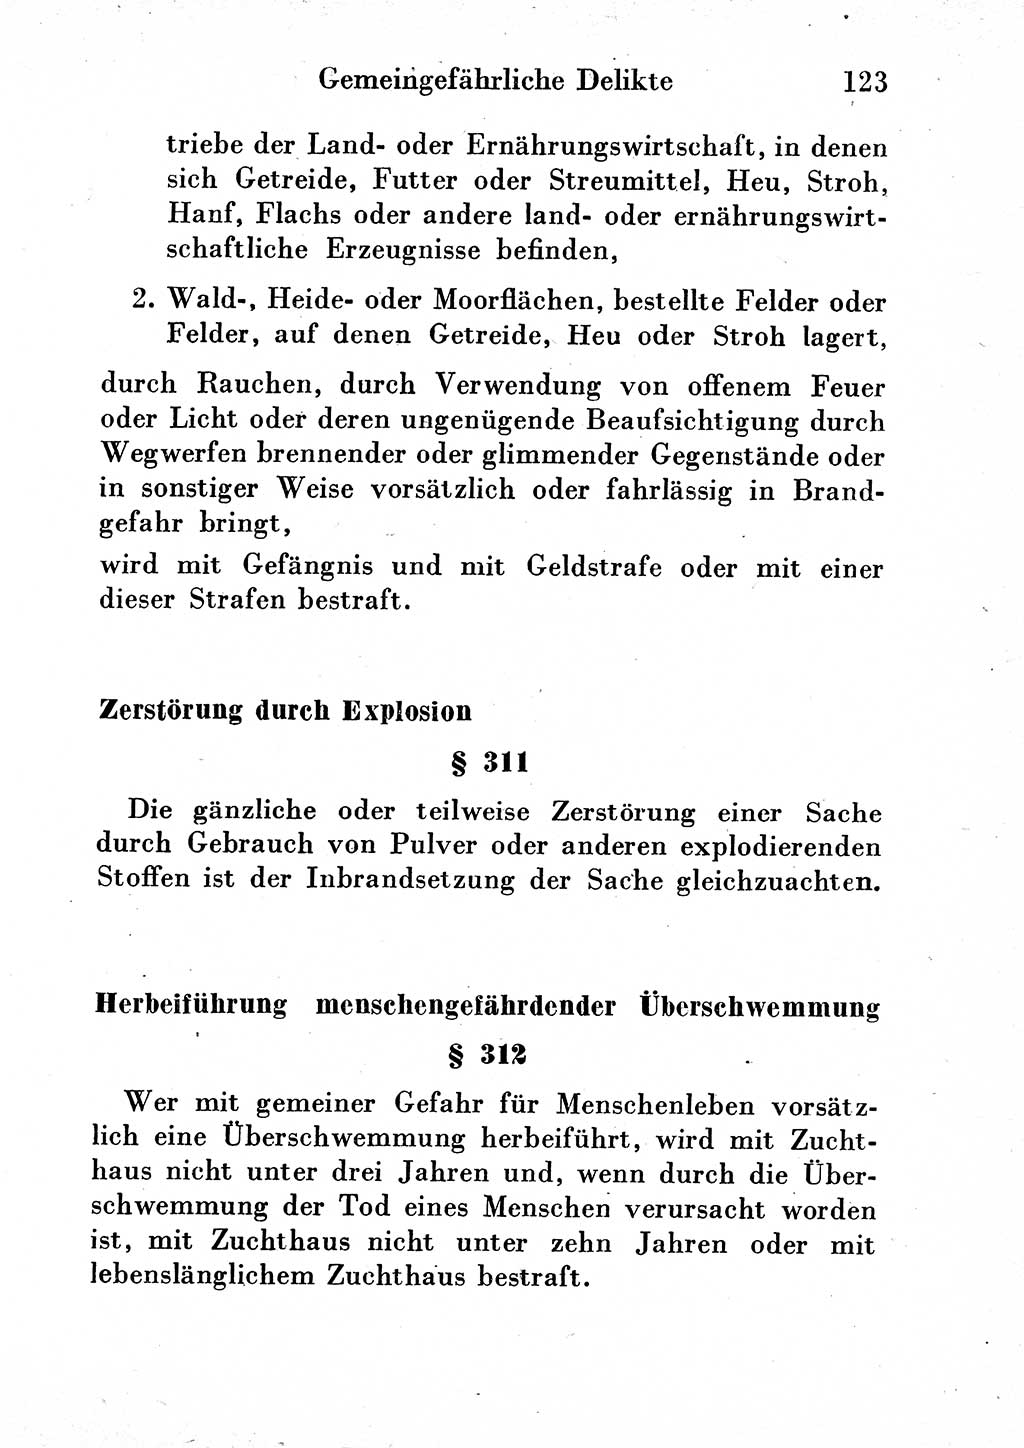 Strafgesetzbuch (StGB) und andere Strafgesetze [Deutsche Demokratische Republik (DDR)] 1954, Seite 123 (StGB Strafges. DDR 1954, S. 123)